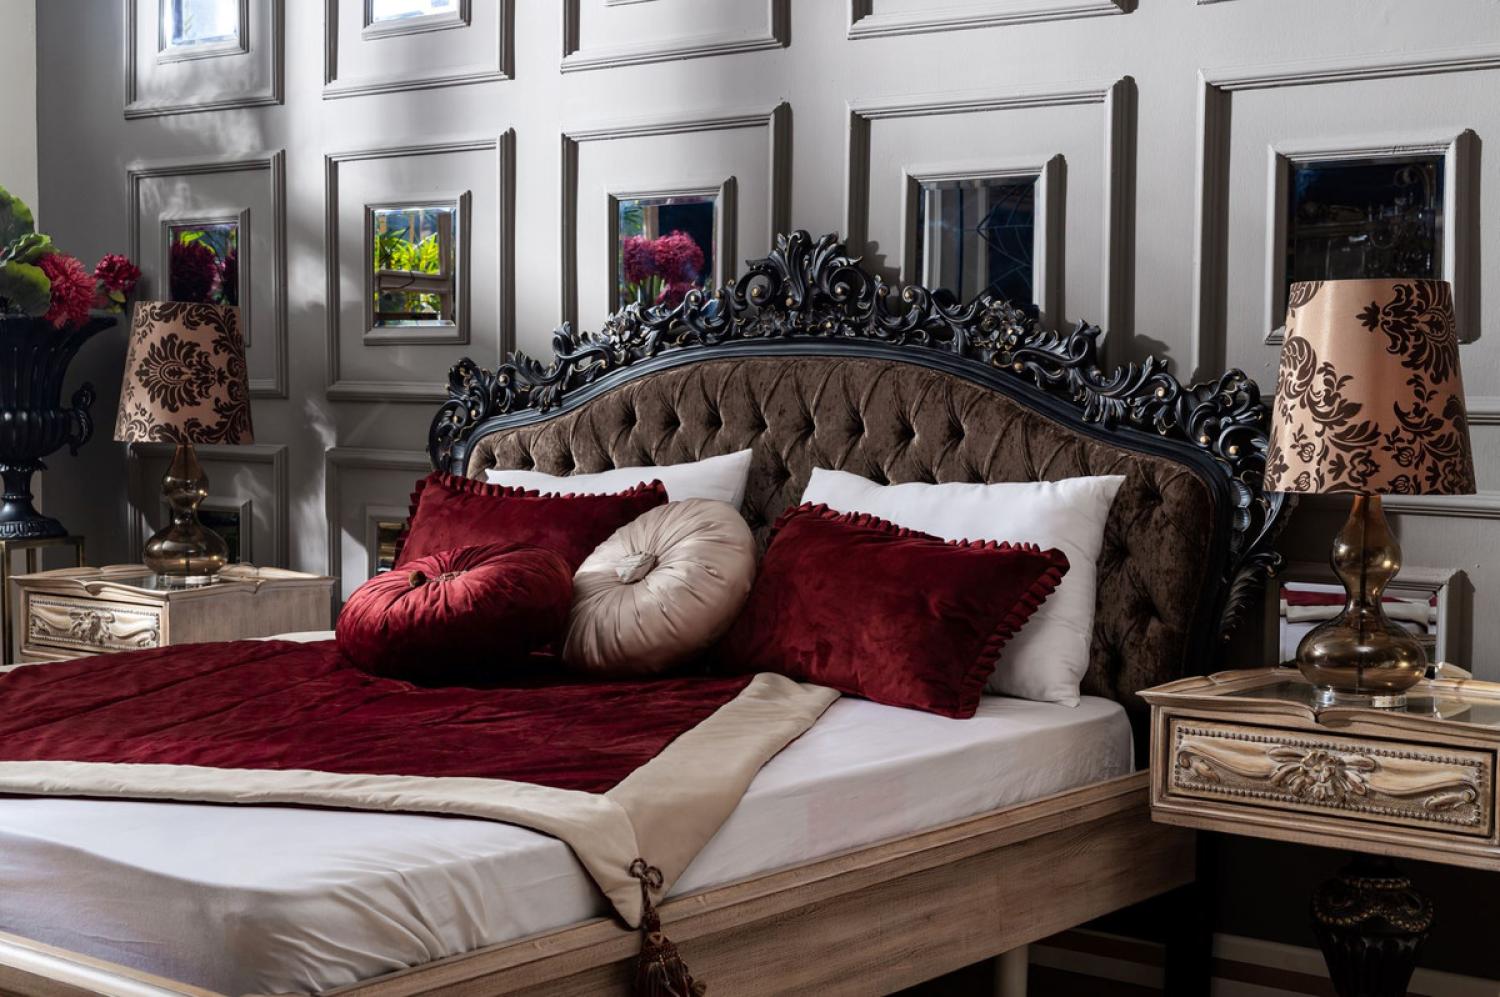 Casa Padrino Luxus Barock Schlafzimmer Set Dunkelbraun / Naturfarben / Schwarz / Gold - 1 Doppelbett mit Kopfteil & 2 Nachtkommoden - Schlafzimmer Möbel im Barockstil - Edel & Prunkvoll Bild 1